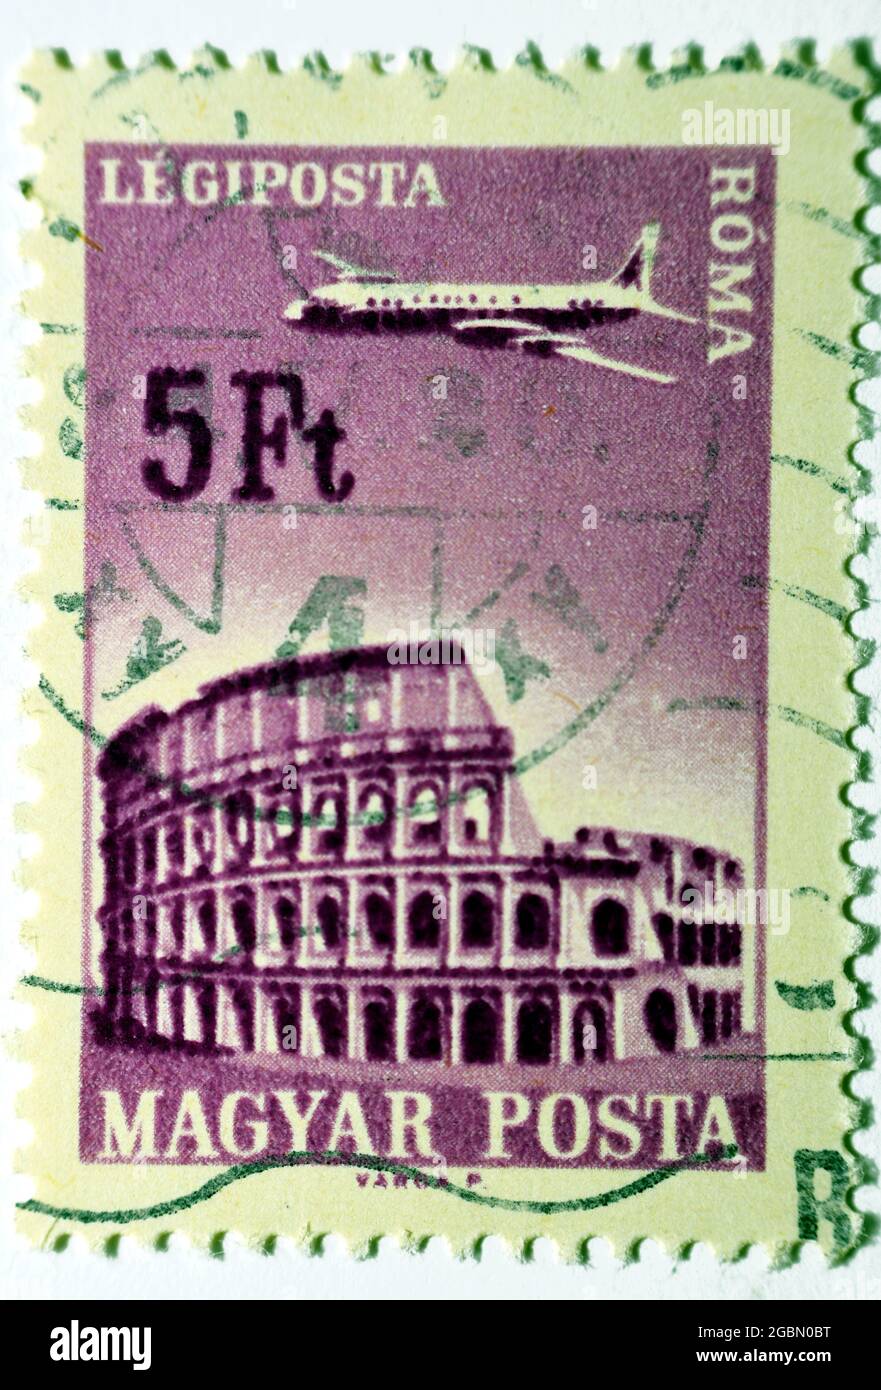 Un timbre-poste imprimé en Hongrie montre l'avion au-dessus de Rome, série de compagnies aériennes hongroises, vers 1966, valeur 5ft cinq Forint hongrois isolés sur blanc Banque D'Images